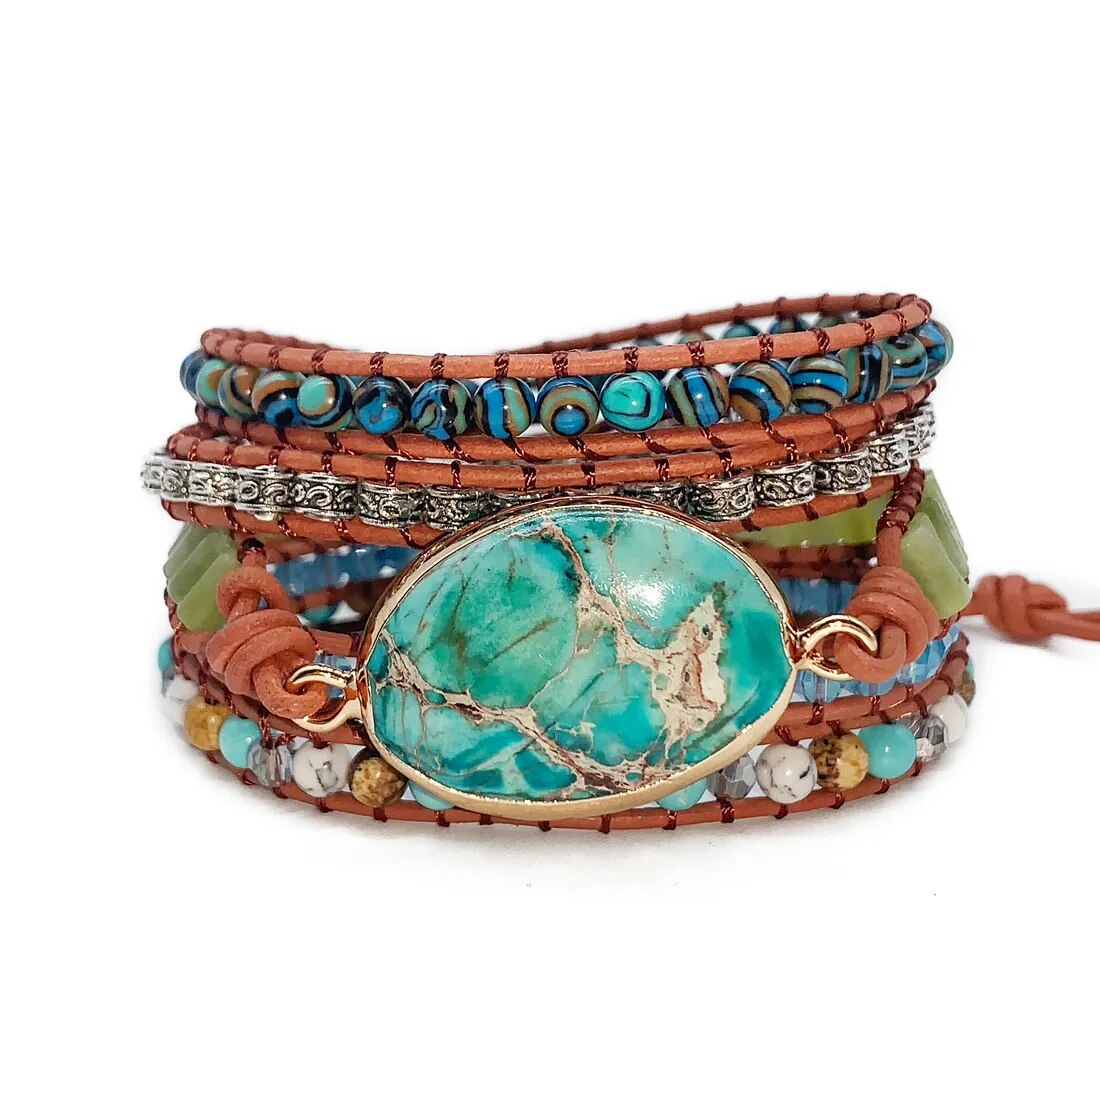 Imperial Stone Bracelet Leather Wrap Bracelet, Boho Wrap Bracelet, Bohemian Jewelry